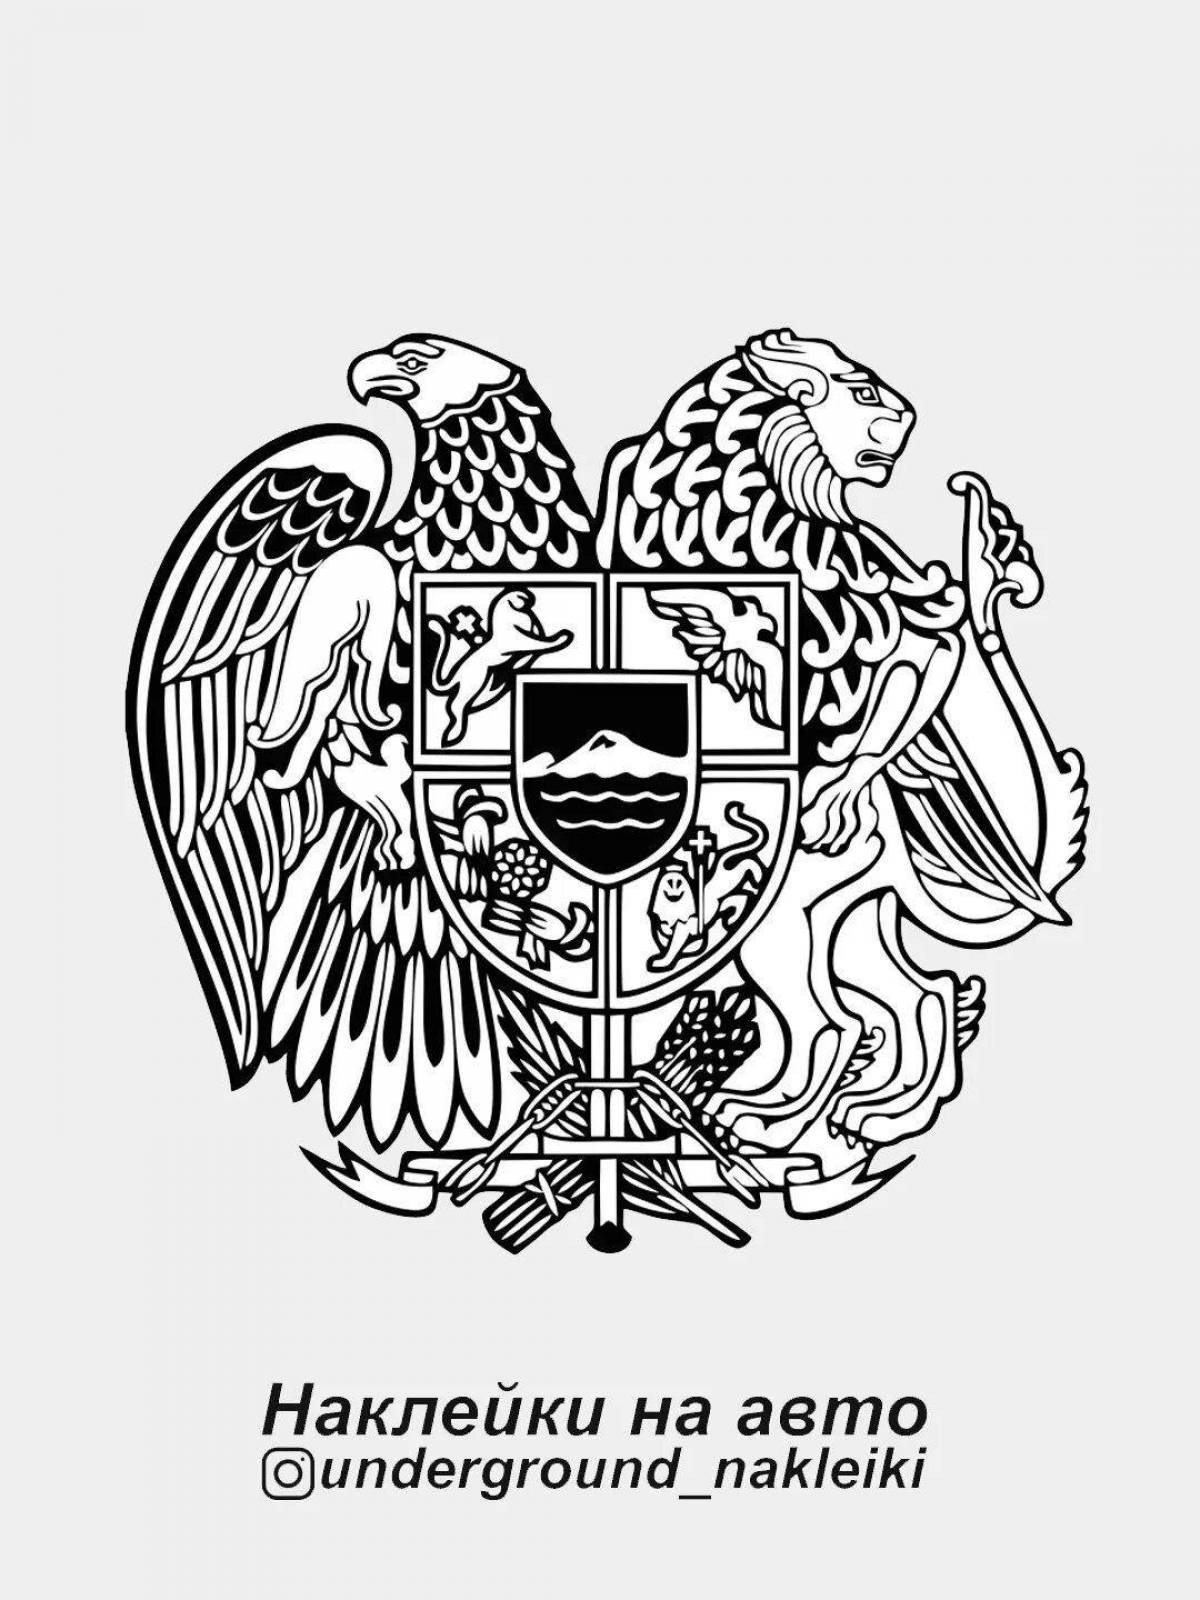 Major coloring coat of arms of armenia